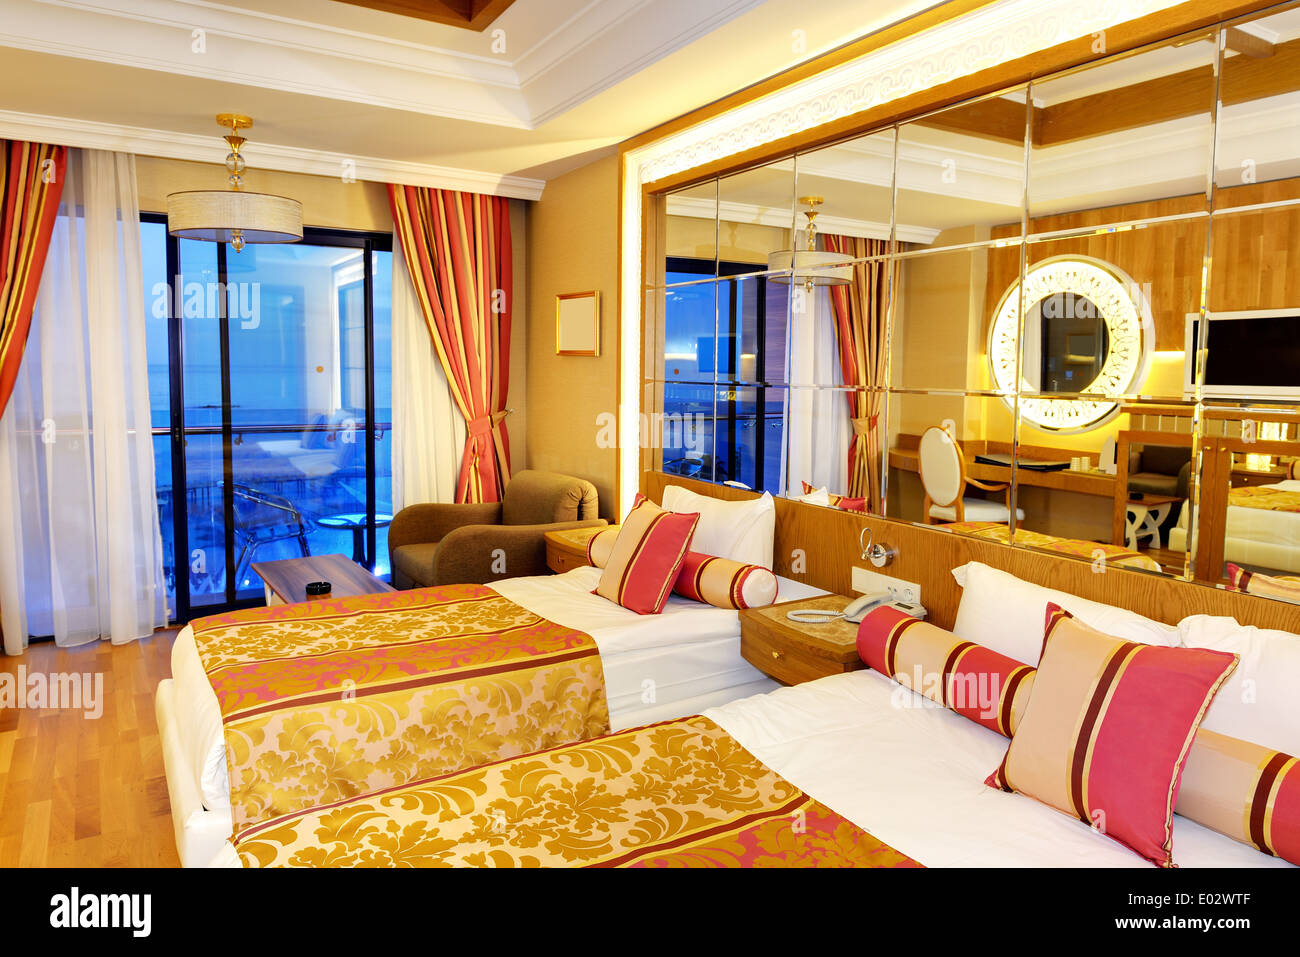 Apartment in the luxury hotel in night illumination, Antalya, Turkey Stock Photo